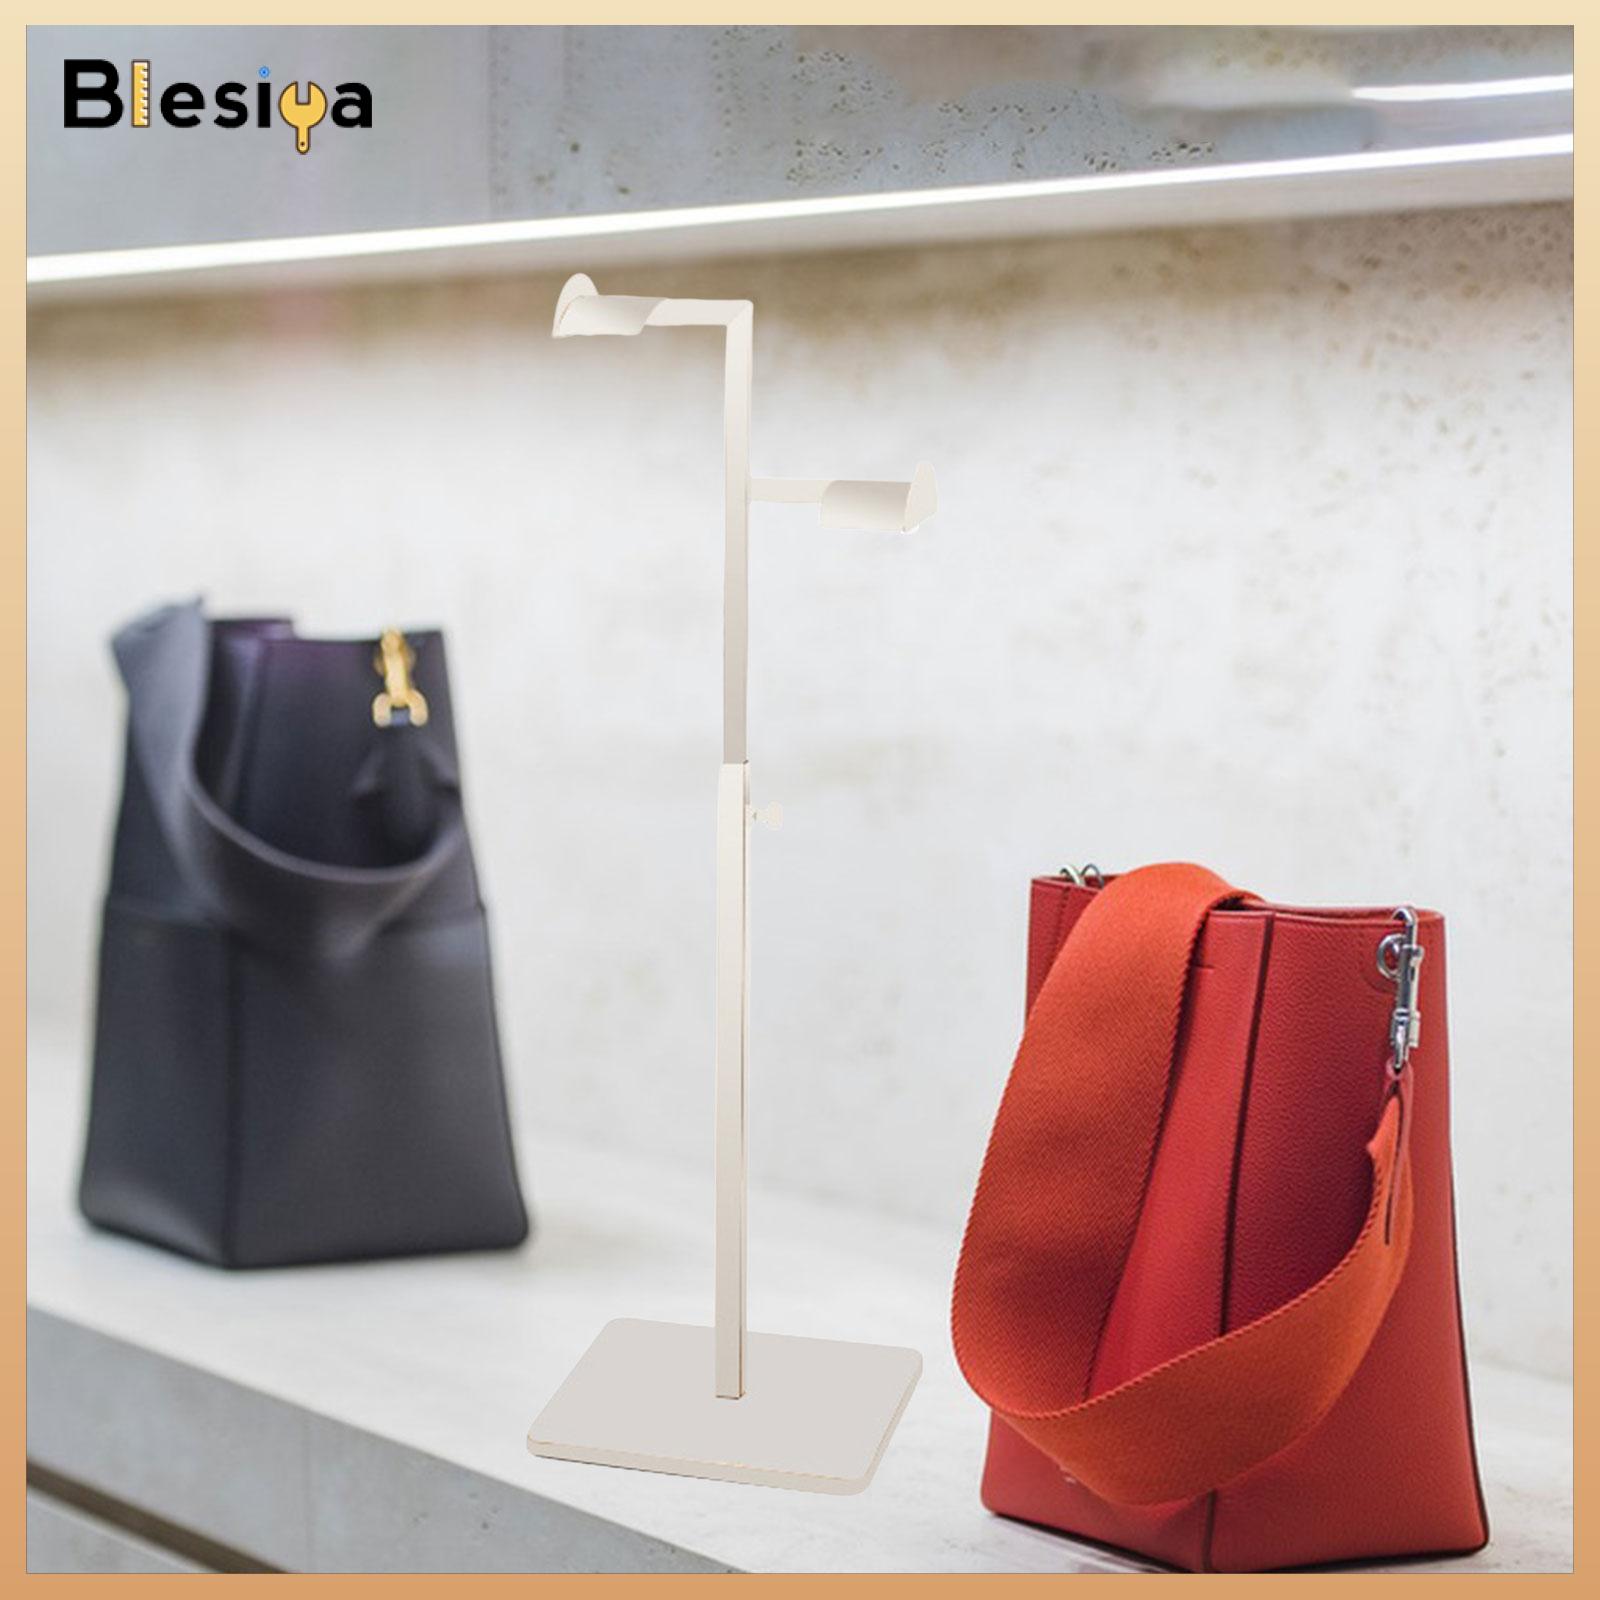 Blesiya Handbag Rack Display Stand